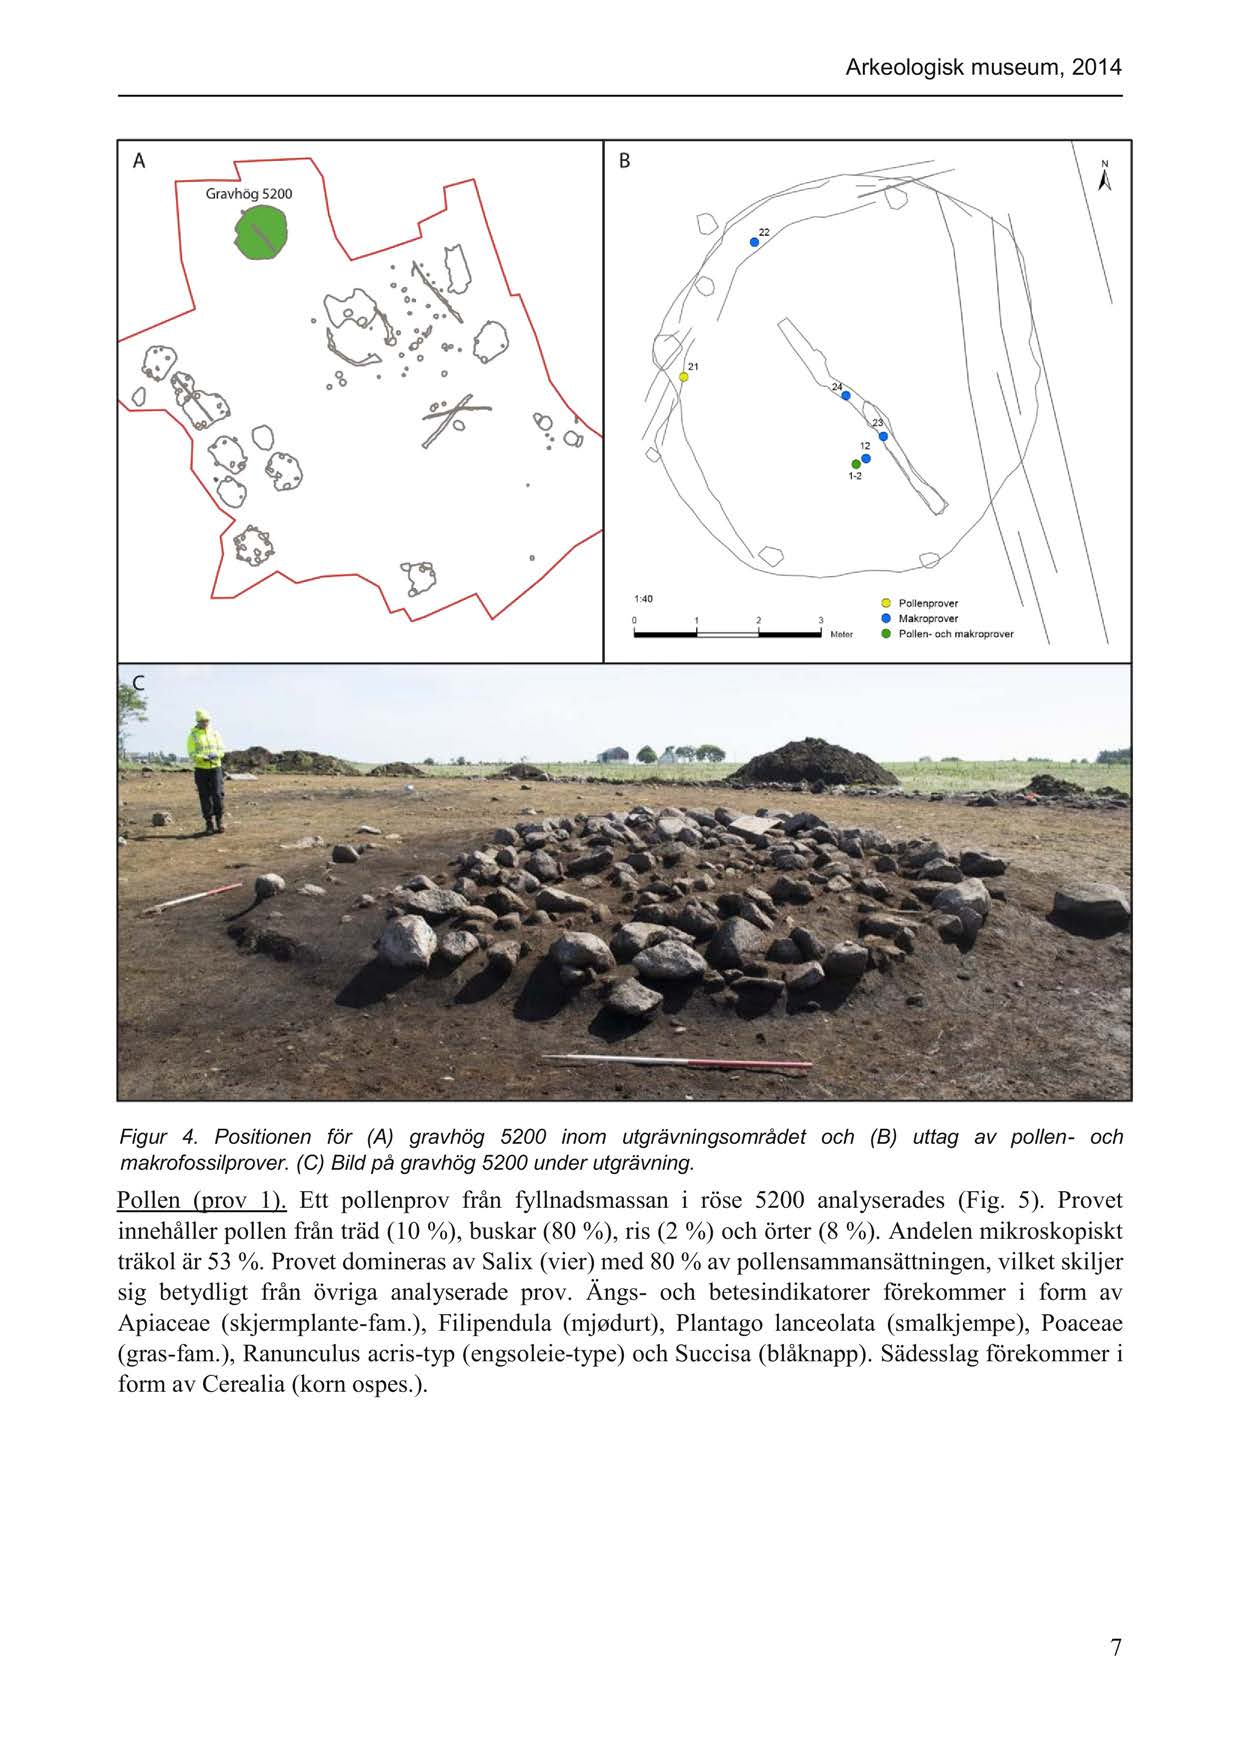 Arkeologisk museum, 2014 Figur 4. Positionen för (A) gravhög 5200 inom utgrävningsområdet och (B) uttag av pollen - och makrofossilprover. (C) Bild på gravhög 5200 under utgrävning. Poll en (prov 1).